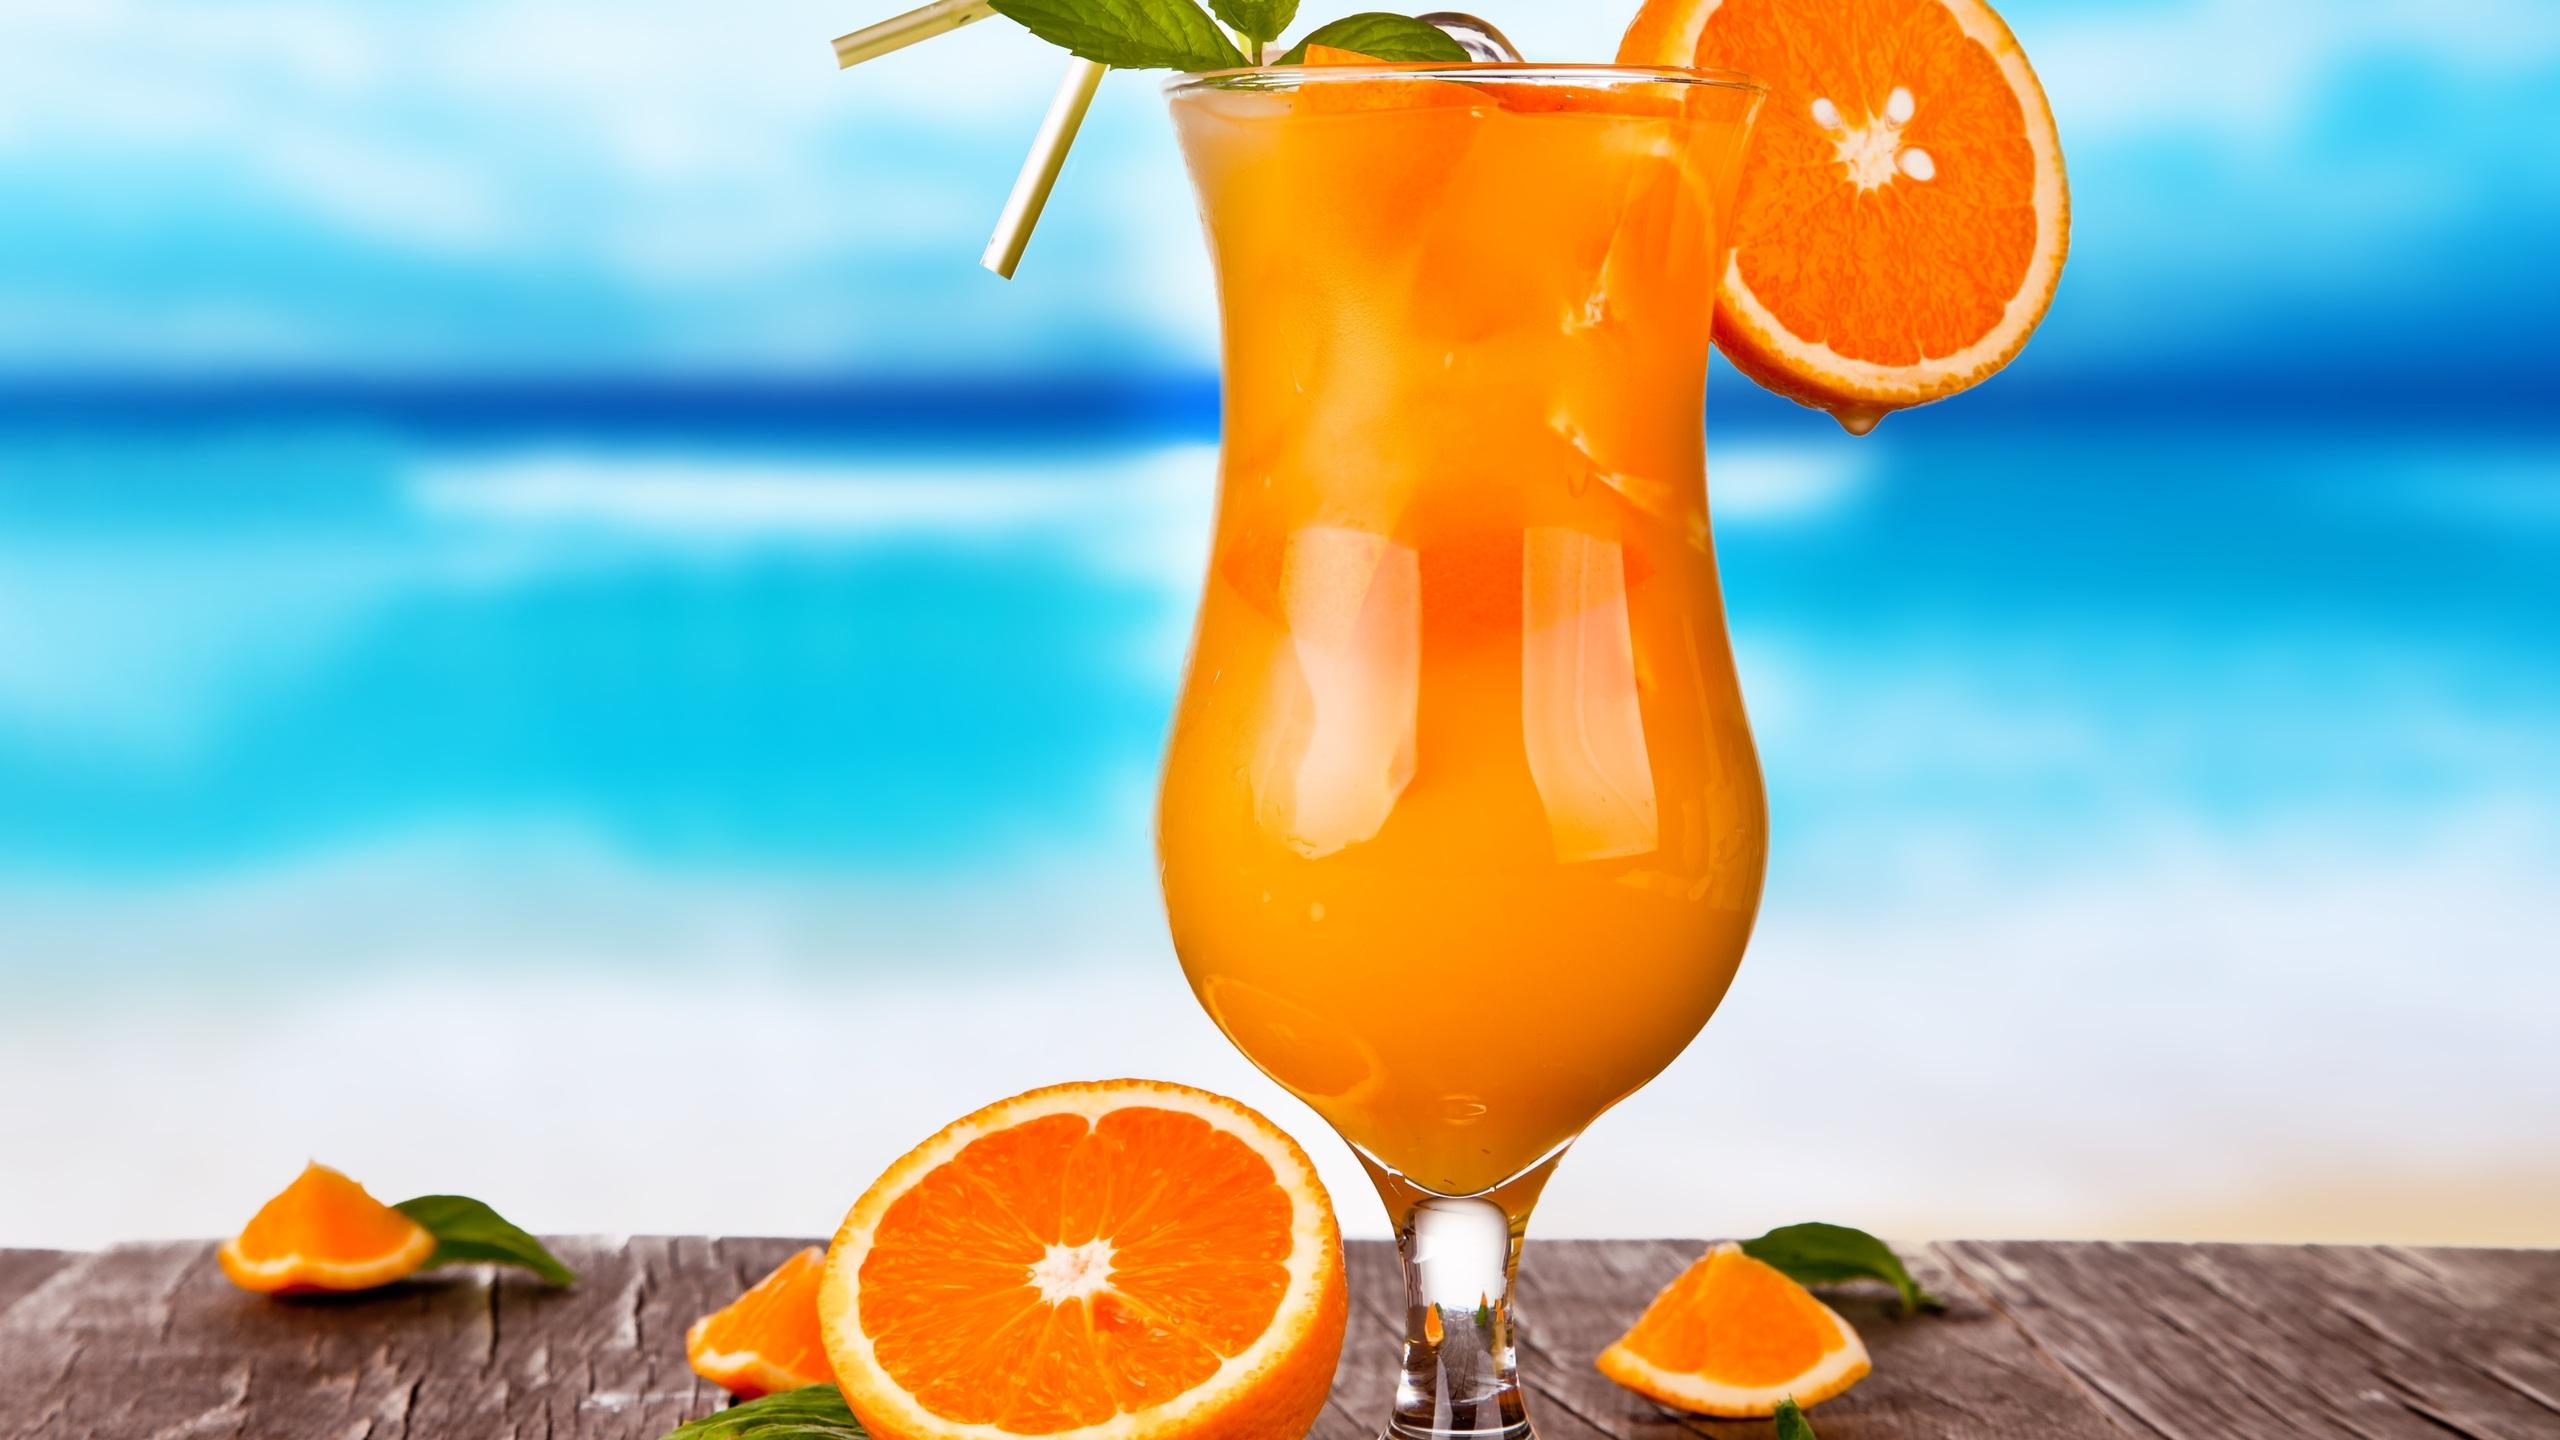 fresh, juice, glass, oranges, citrus, ice